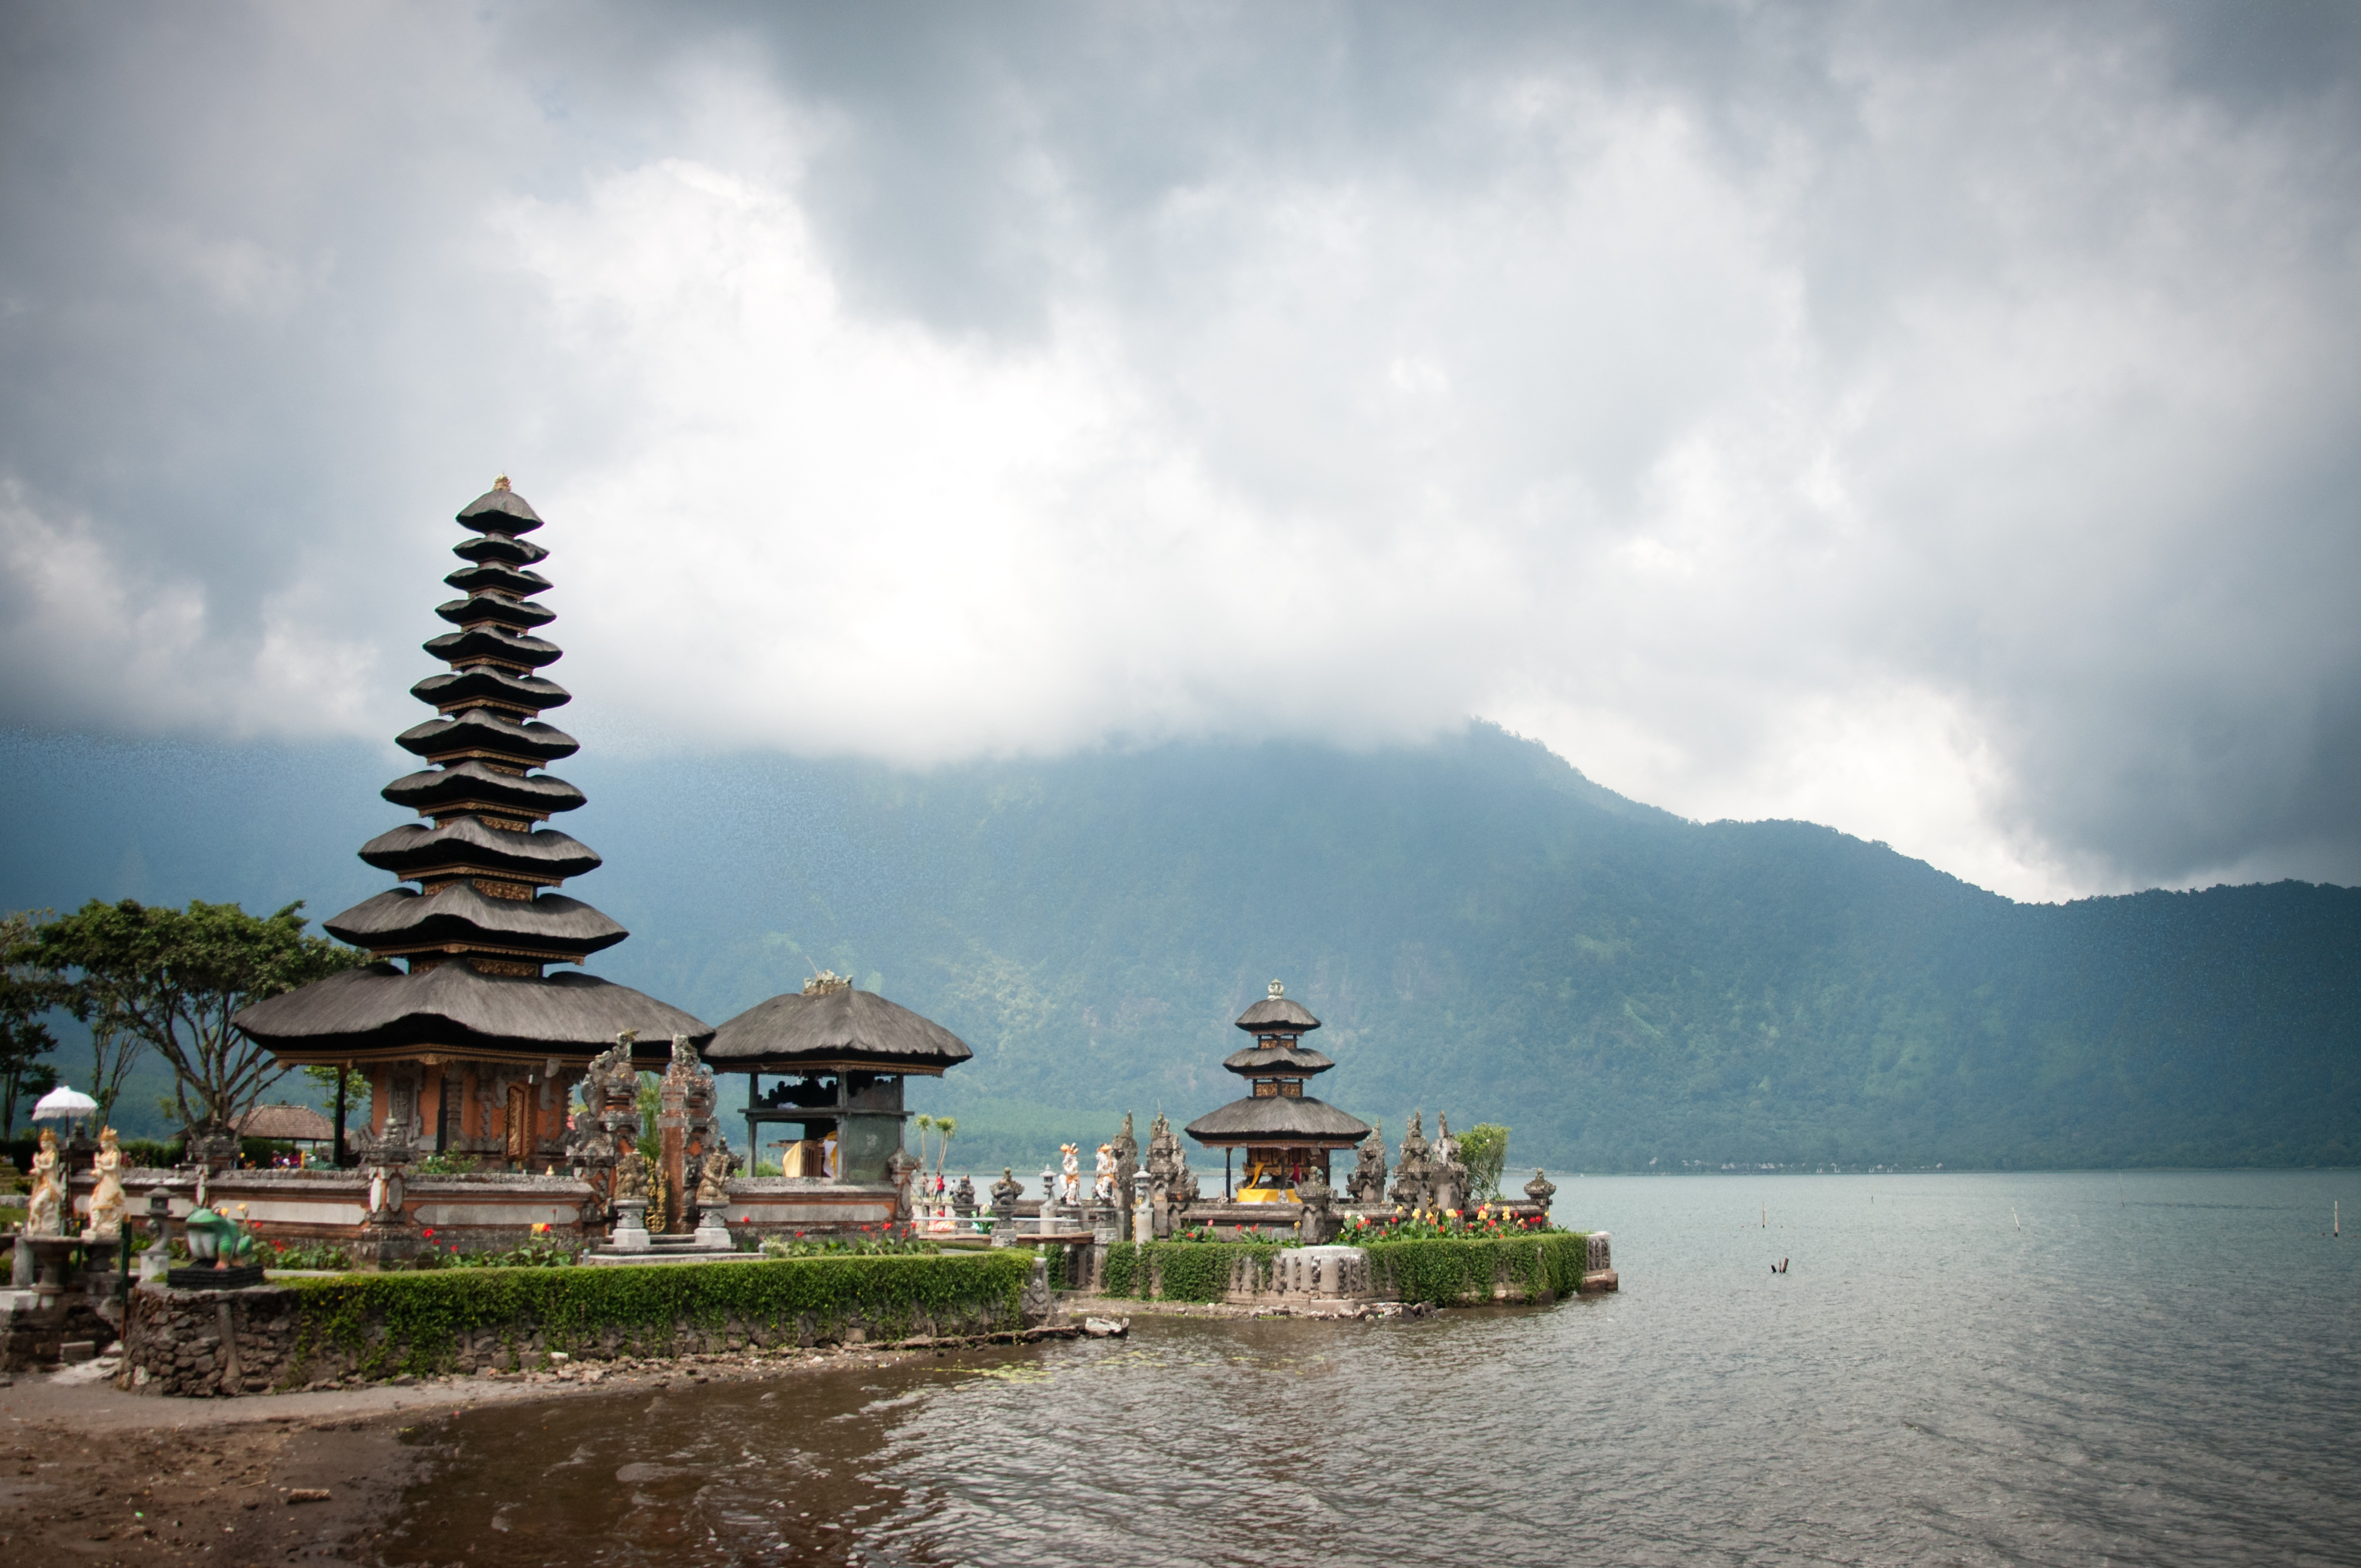 Pura Ulun Danu temple on a lake Beratan, Amazing, Scene, Panorama, Panoramic, HQ Photo